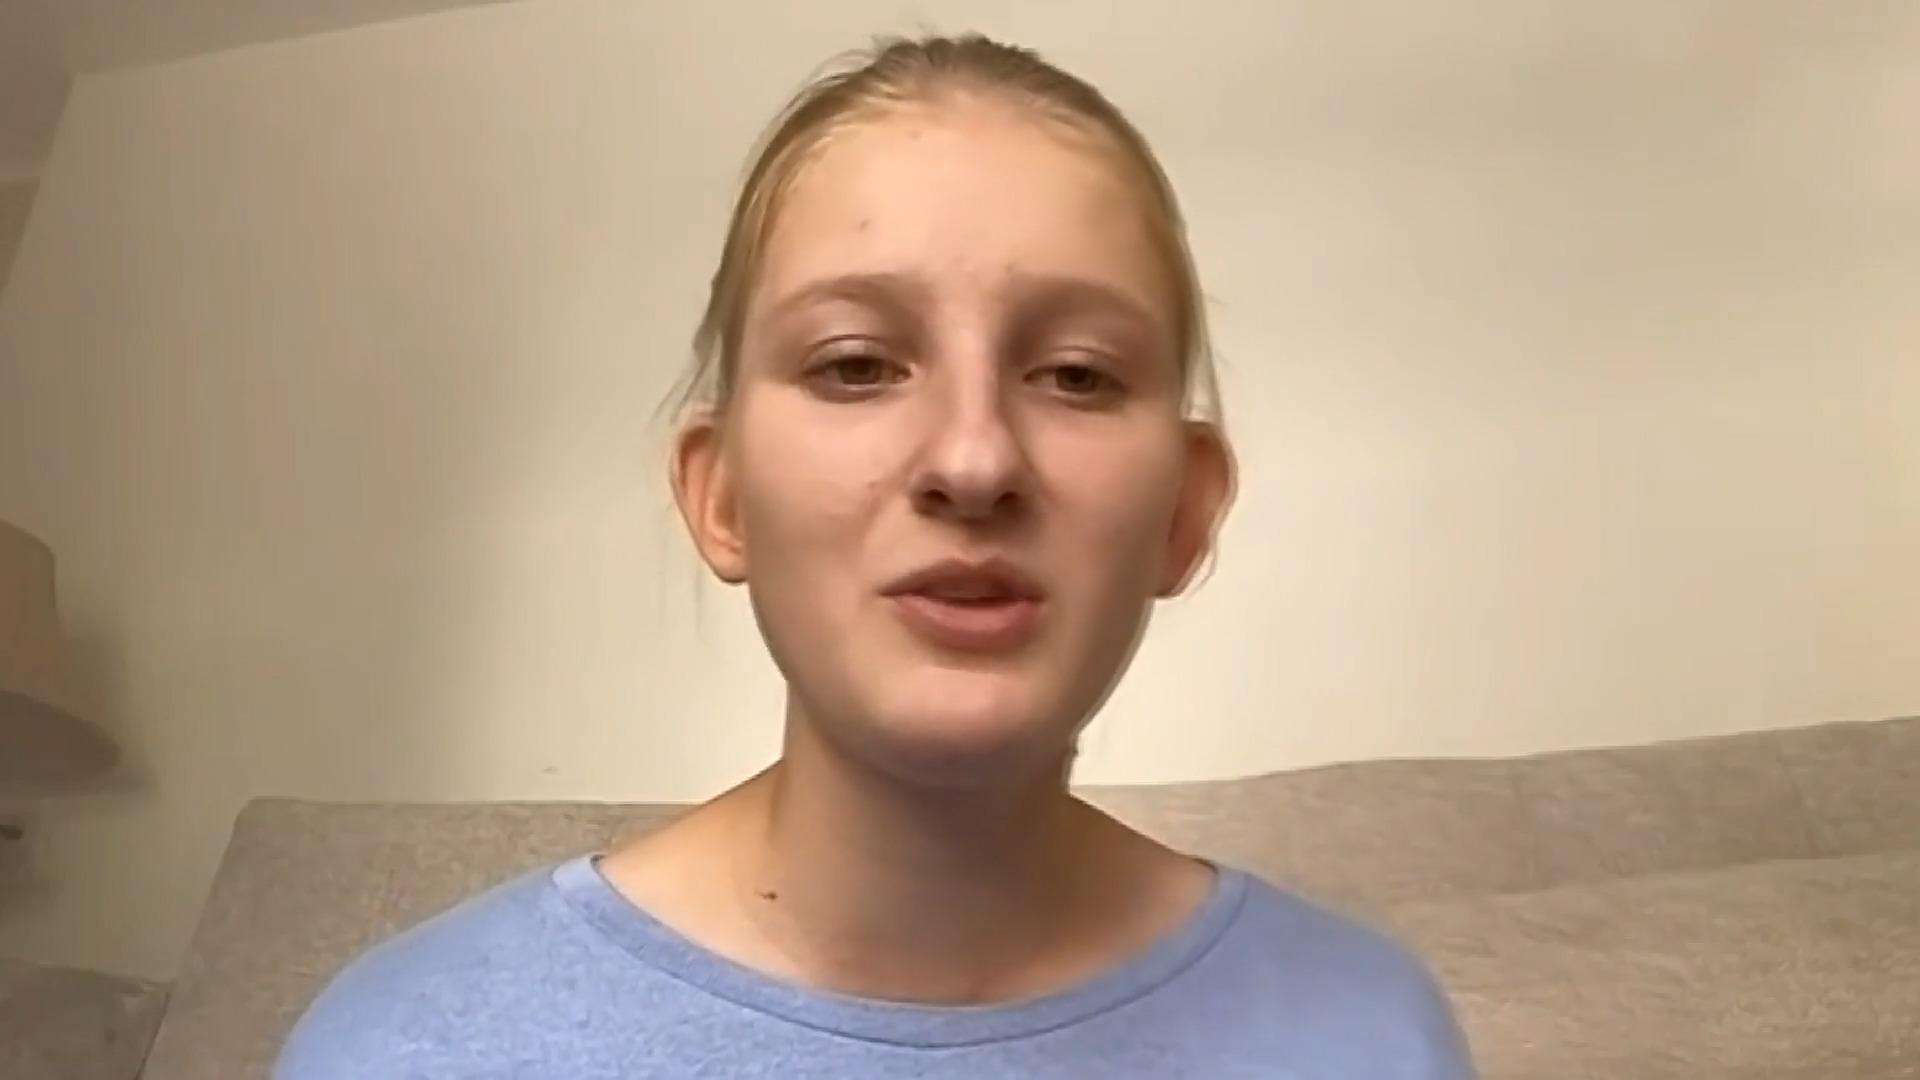 Deutsche Schülerin in Israel: "Lebe in ständiger Unruhe" Wie 16-Jährige Situation erlebt